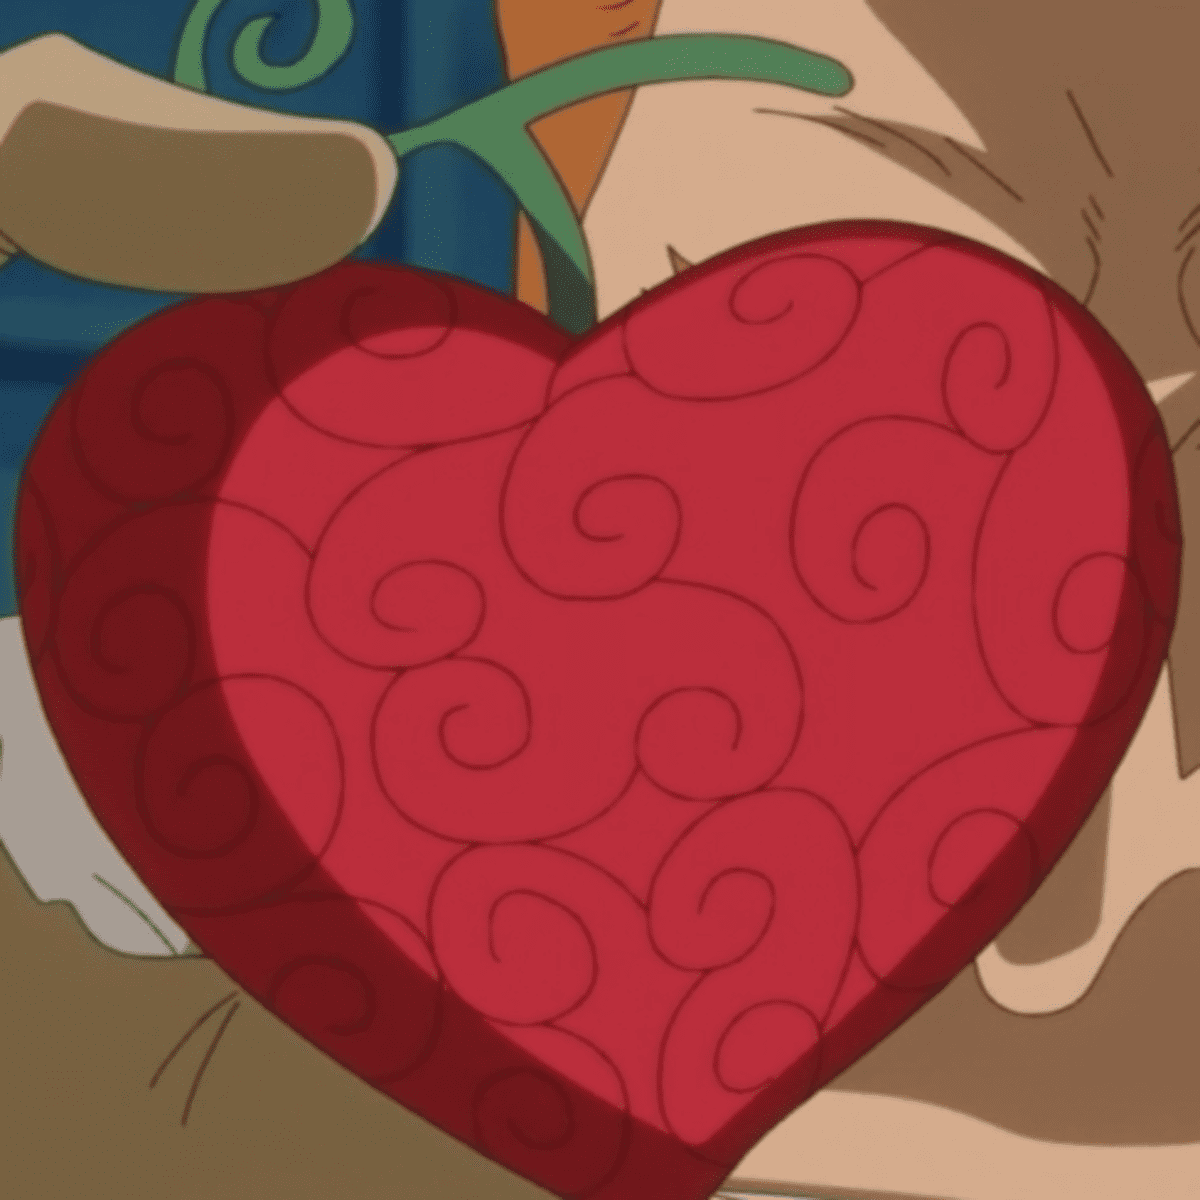 One Piece: Doflamingo's Devil Fruit Ito Ito No Mi Explained - Anime  Explained